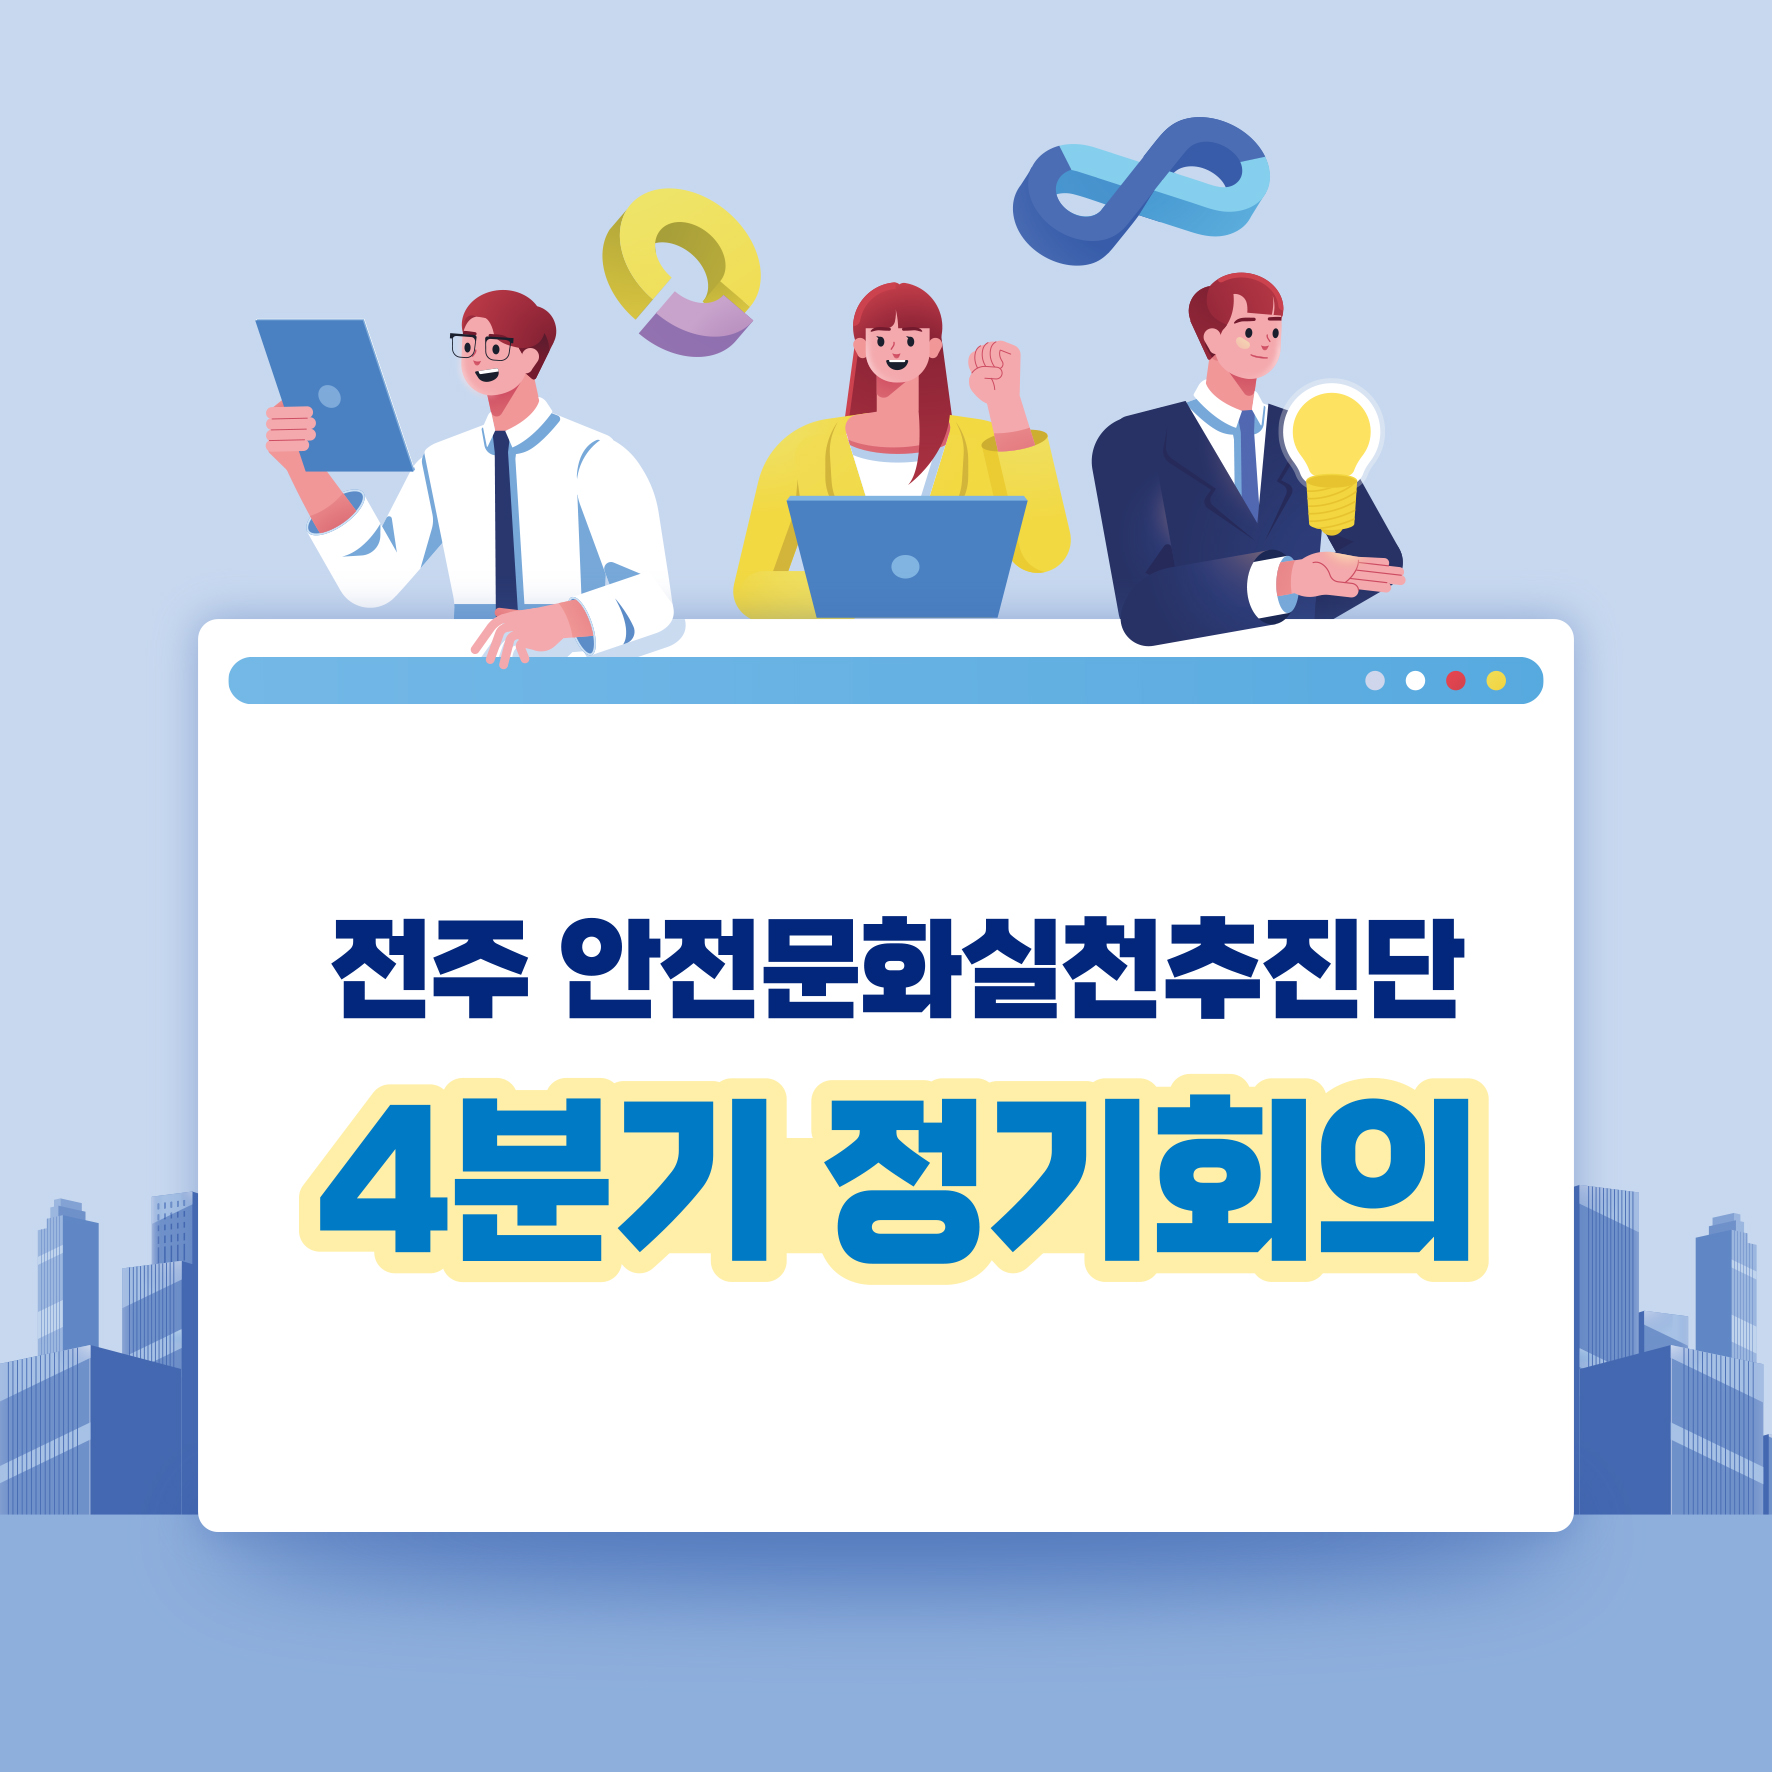  [전주] 안전문화실천추진단 4분기 정기회의 개최